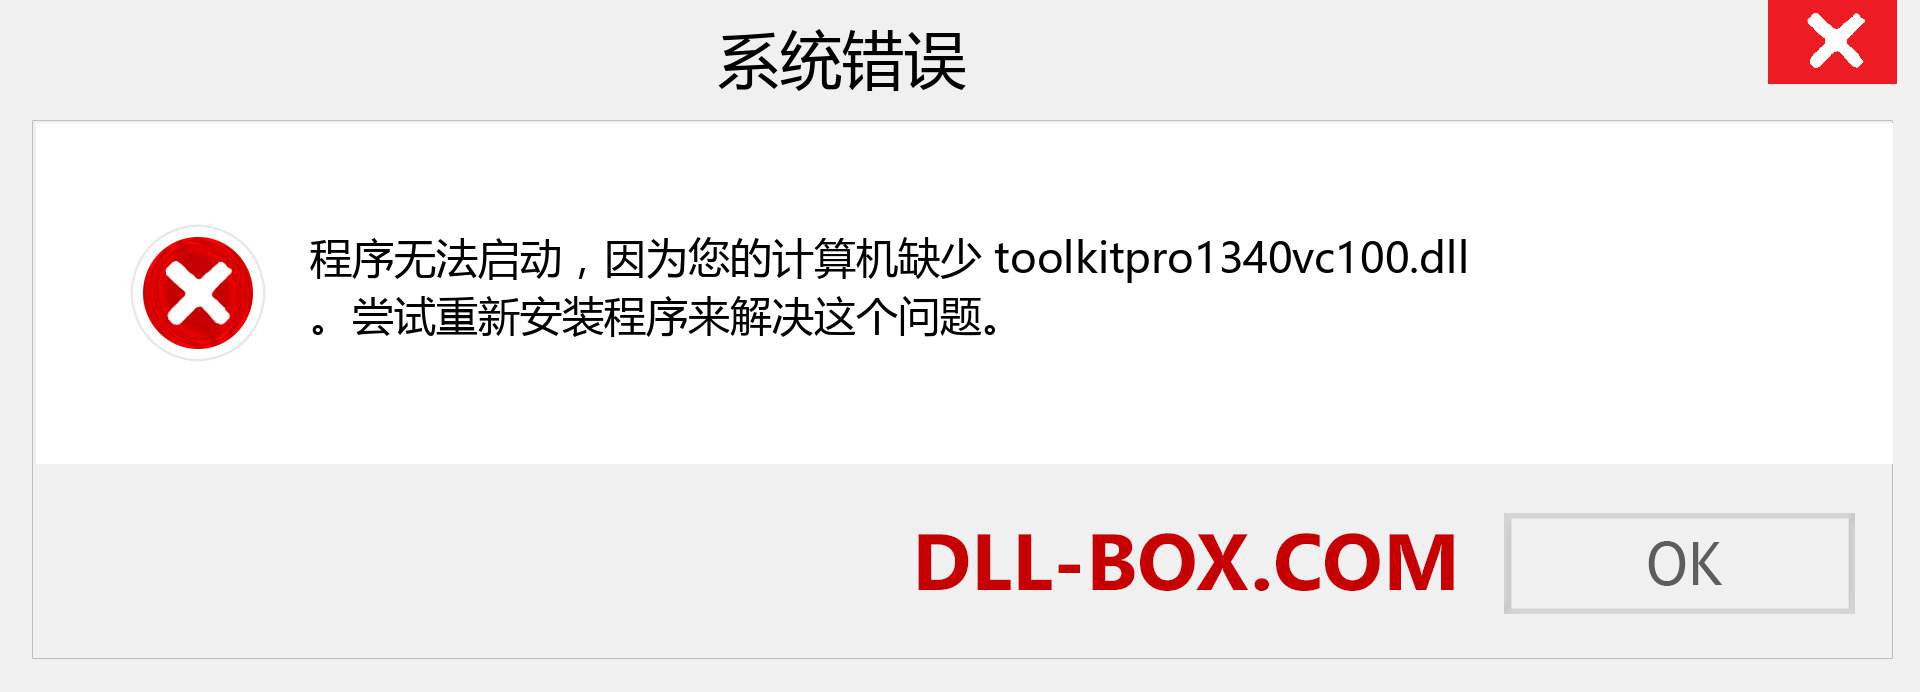 toolkitpro1340vc100.dll 文件丢失？。 适用于 Windows 7、8、10 的下载 - 修复 Windows、照片、图像上的 toolkitpro1340vc100 dll 丢失错误